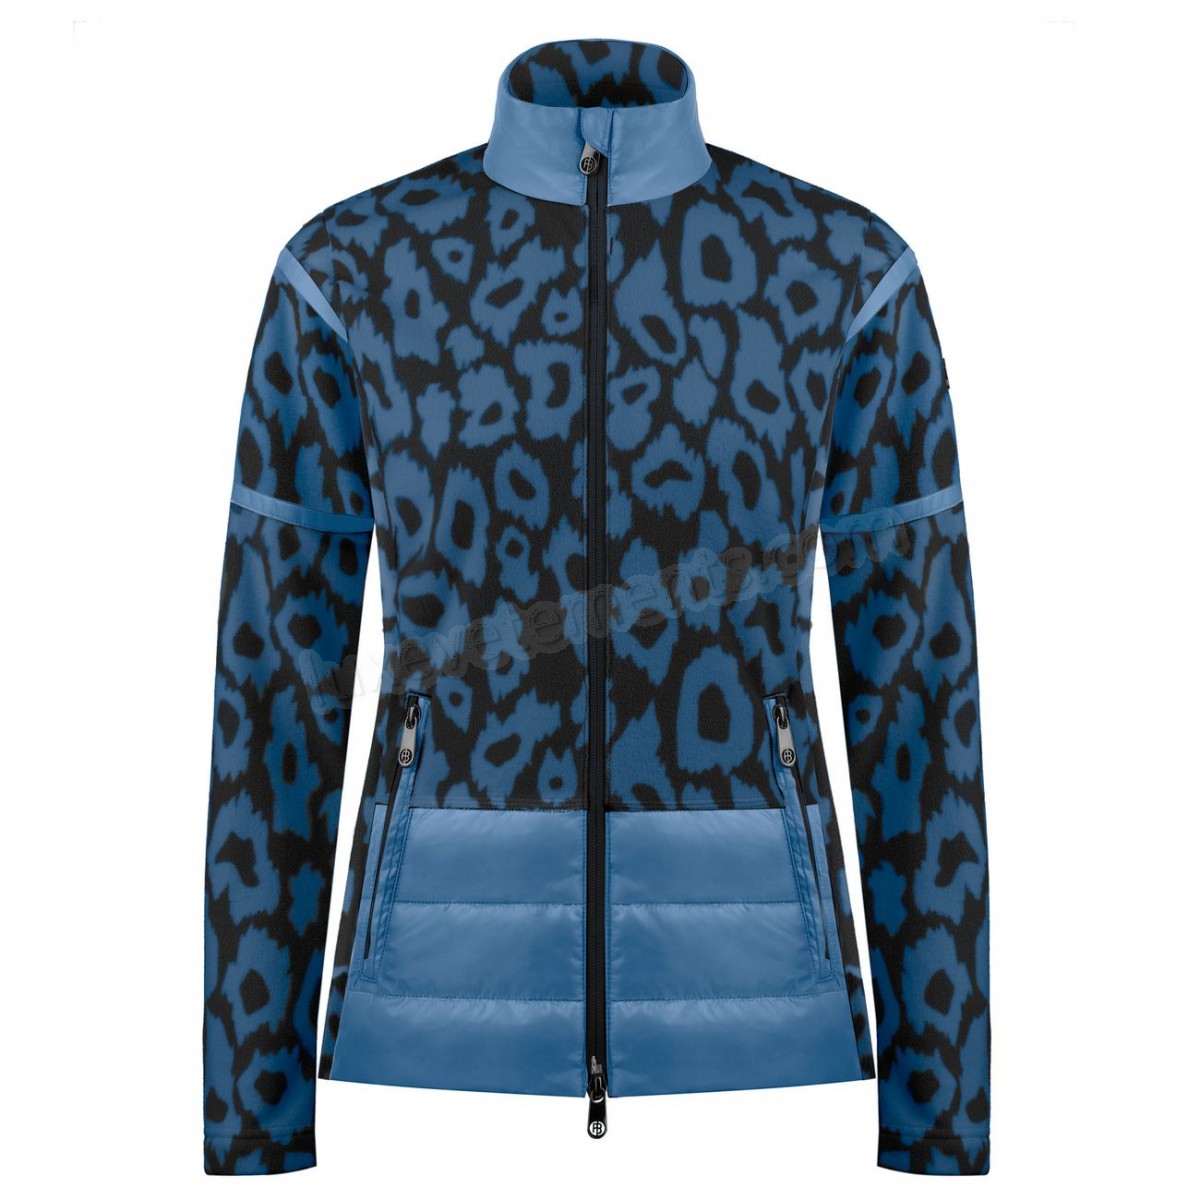 Poivre Blanc-Sports d'hiver femme POIVRE BLANC Veste Polaire Poivre Blanc Hybrid Fleece Jacket 1601 Panther Blue Femme Vente en ligne - -1